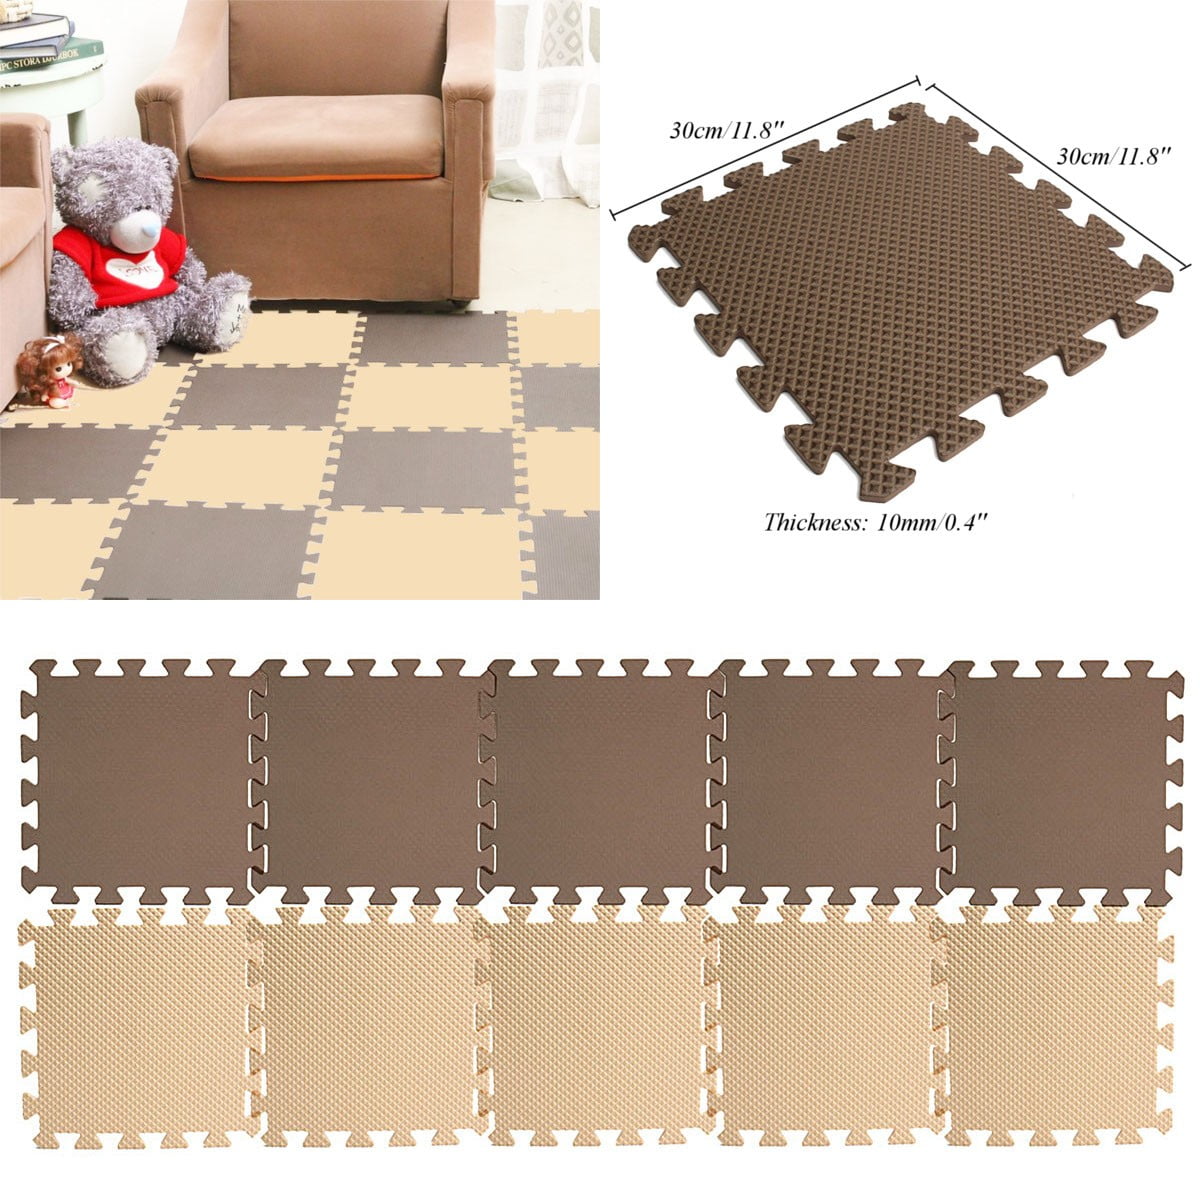 10/20/30x Eva Foam Puzzle Exercise Play Mat Interlocking Floor Soft Tiles 12''